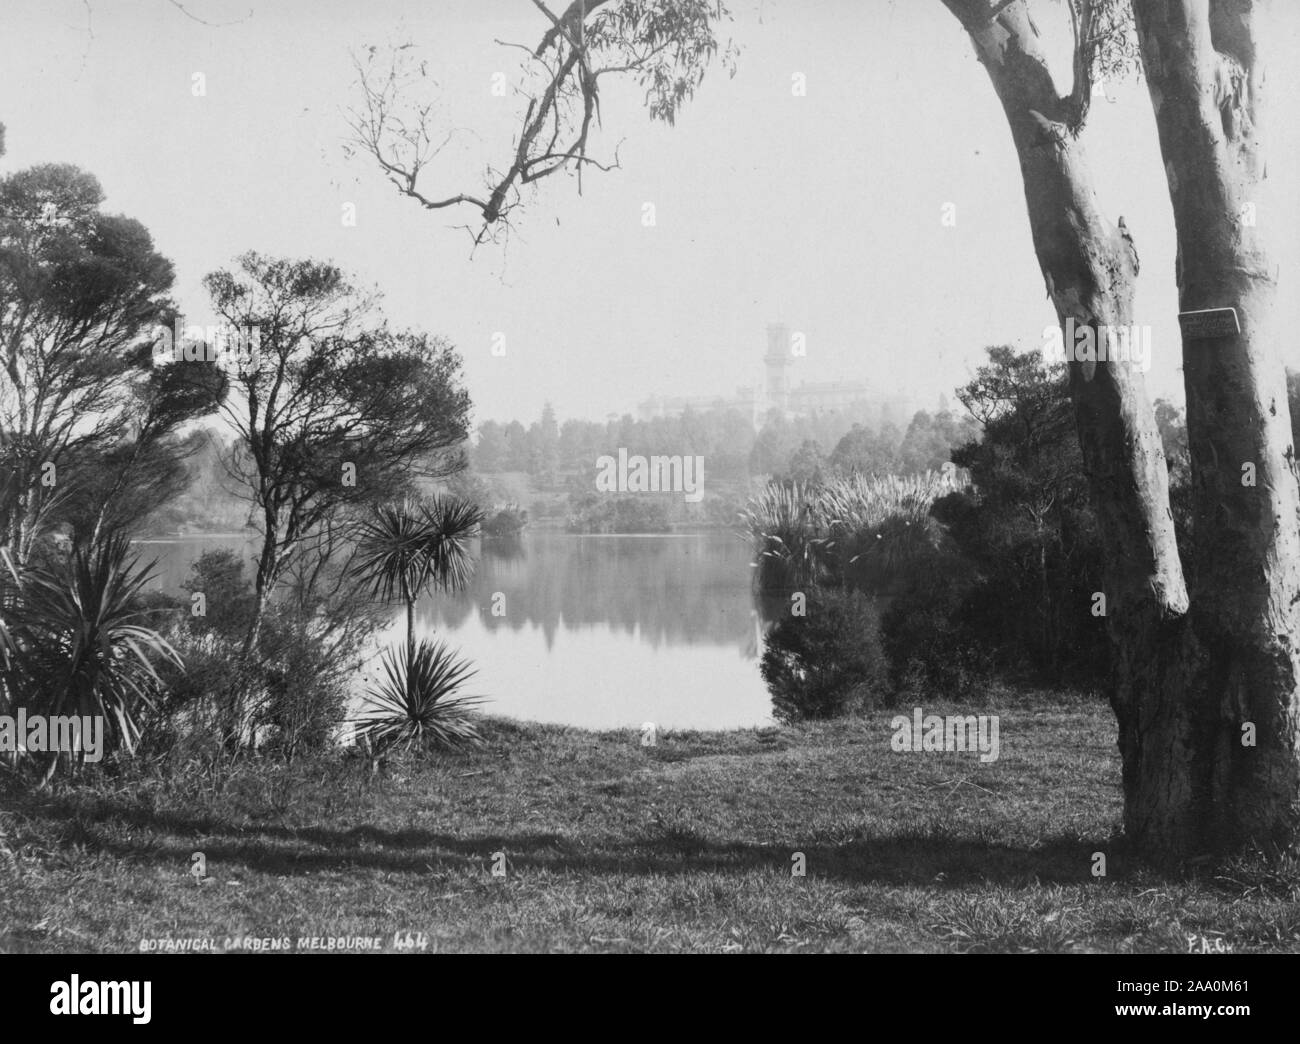 Paysage noir et blanc photographie d'un lac entouré d'une végétation luxuriante, dans la région de Royal Botanic Gardens Victoria à Melbourne, en Australie, par le photographe Frank Coxhead, 1885. À partir de la Bibliothèque publique de New York. () Banque D'Images